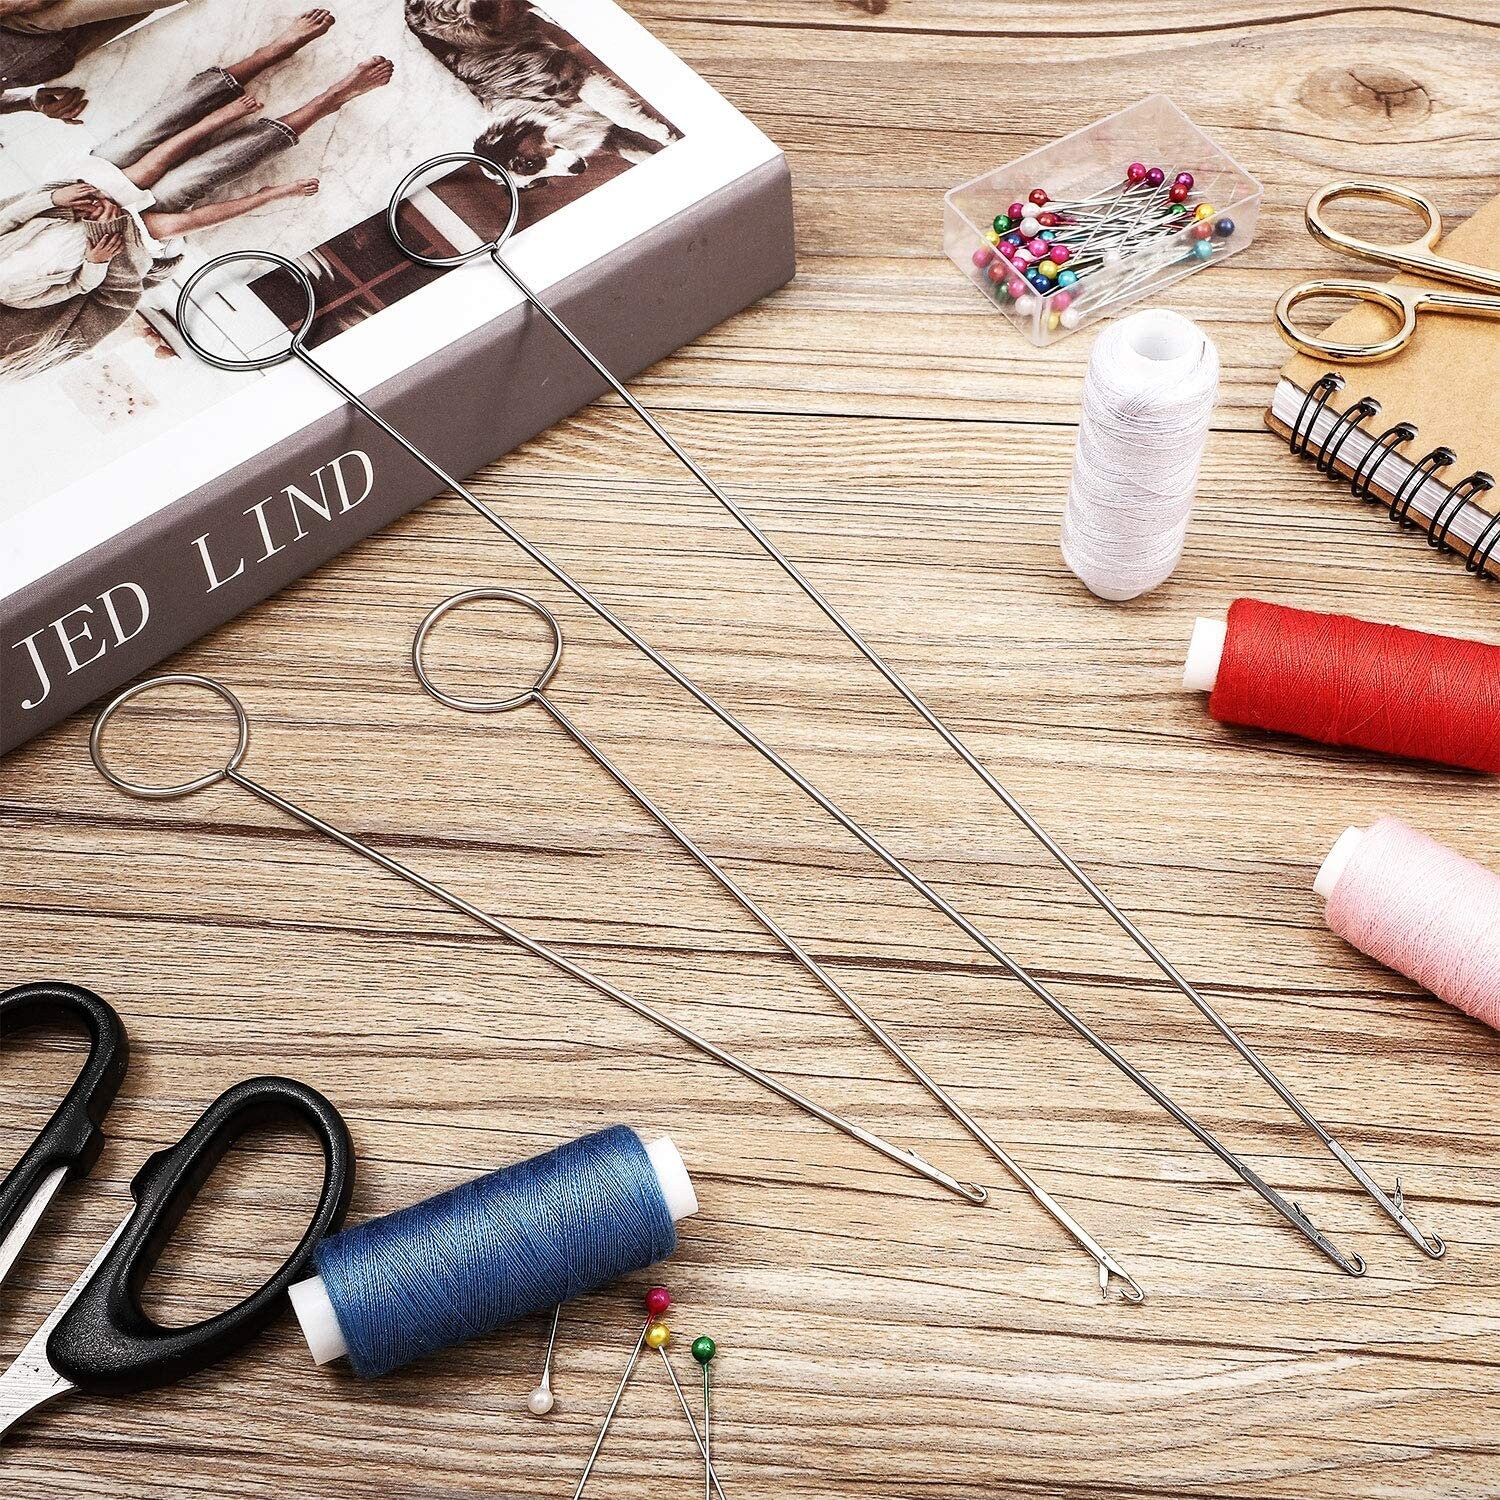 Stainless Steel Sewing Loop Turner Hook: Create Professional